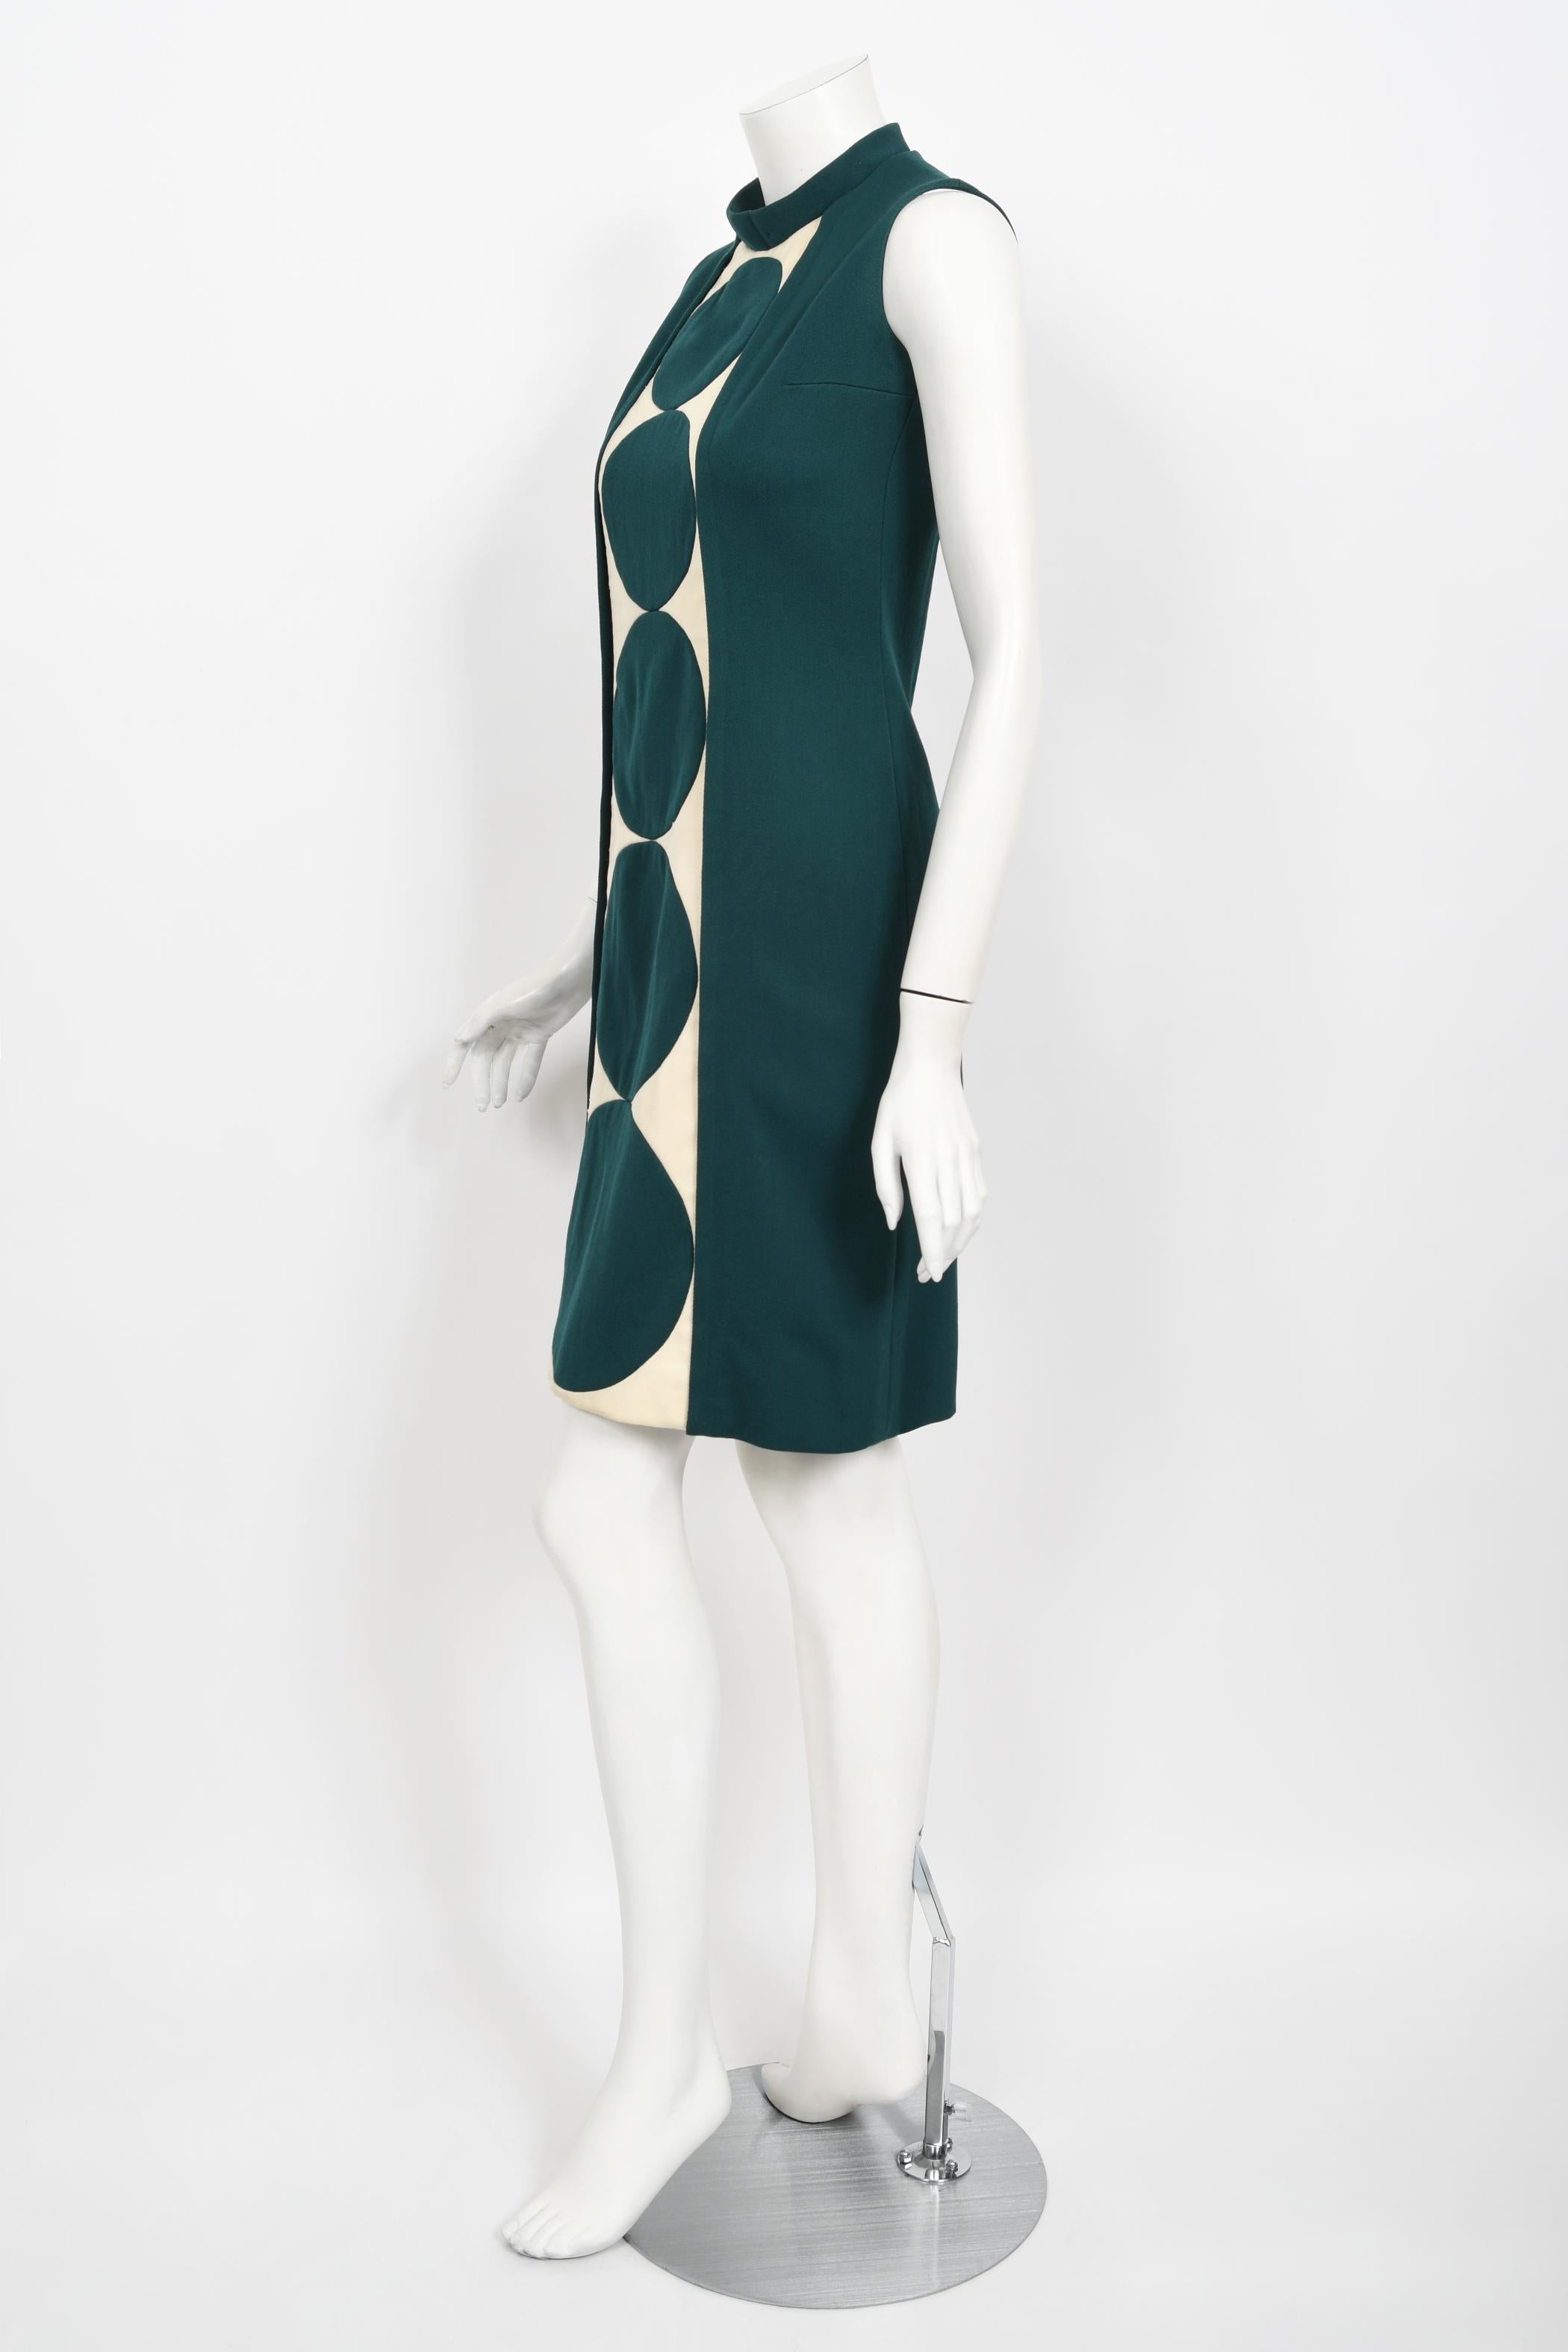 Vintage 1966 Jacques Esterel Haute Couture Documented Teal Blue Op-Art Mod Dress For Sale 7